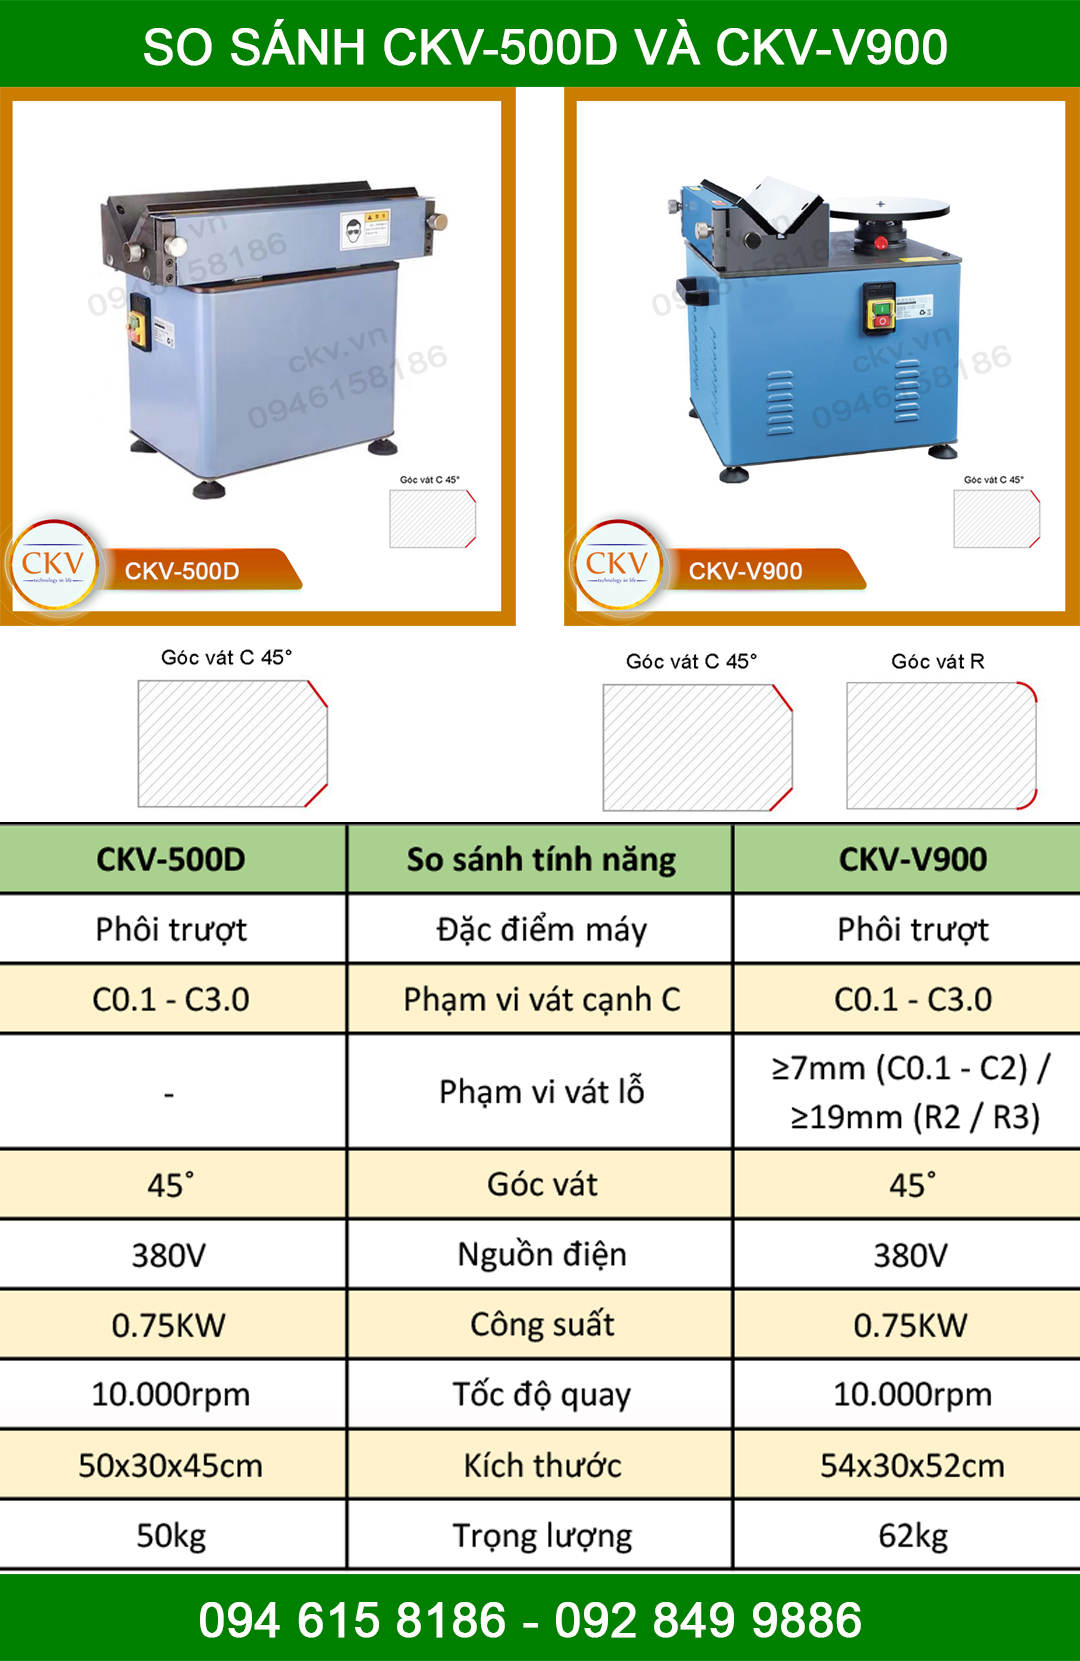 So sánh CKV-500D và CKV-V900